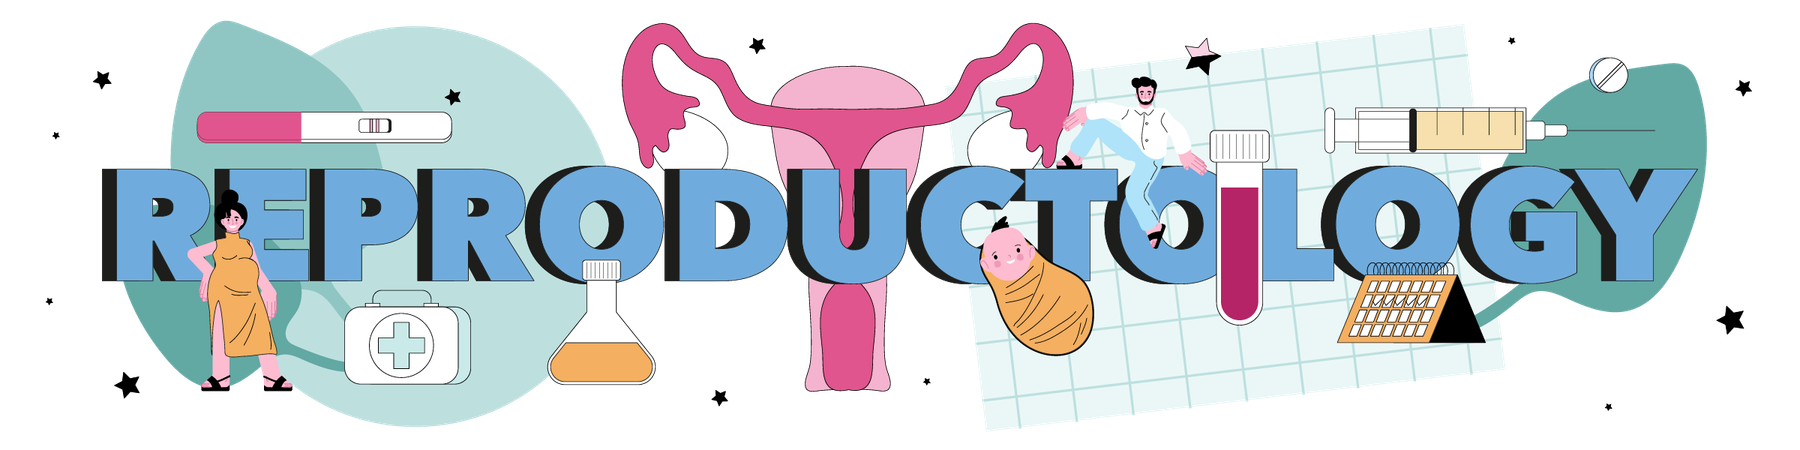 Pregnancy monitoring and medical diagnosis  Ilustración